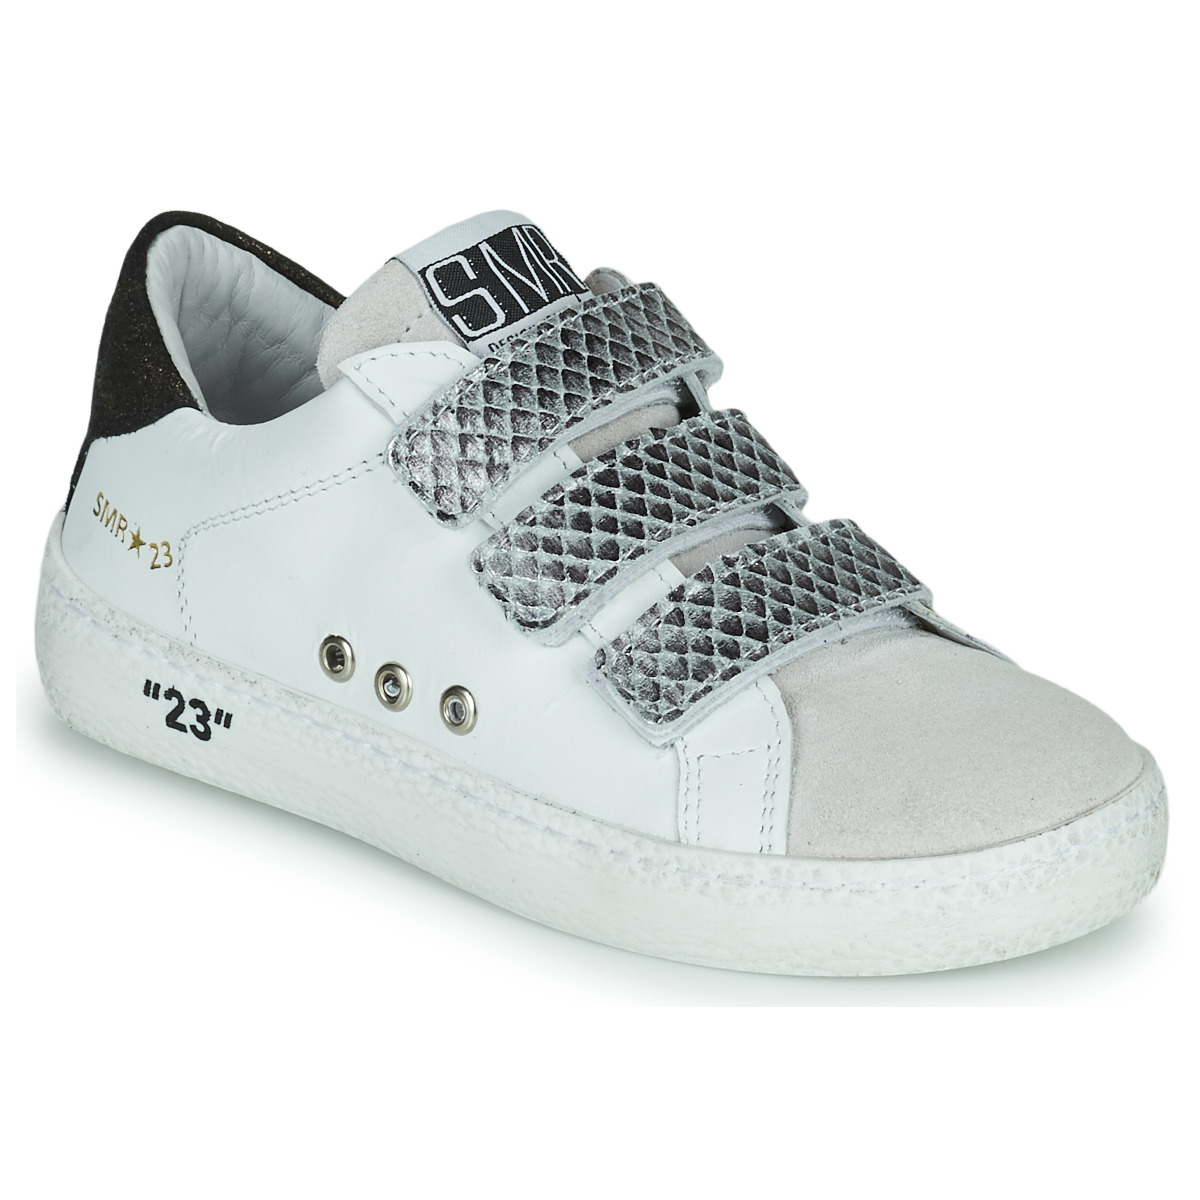 Sapatos Rapariga Sapatilhas Semerdjian VIP Branco / Prata